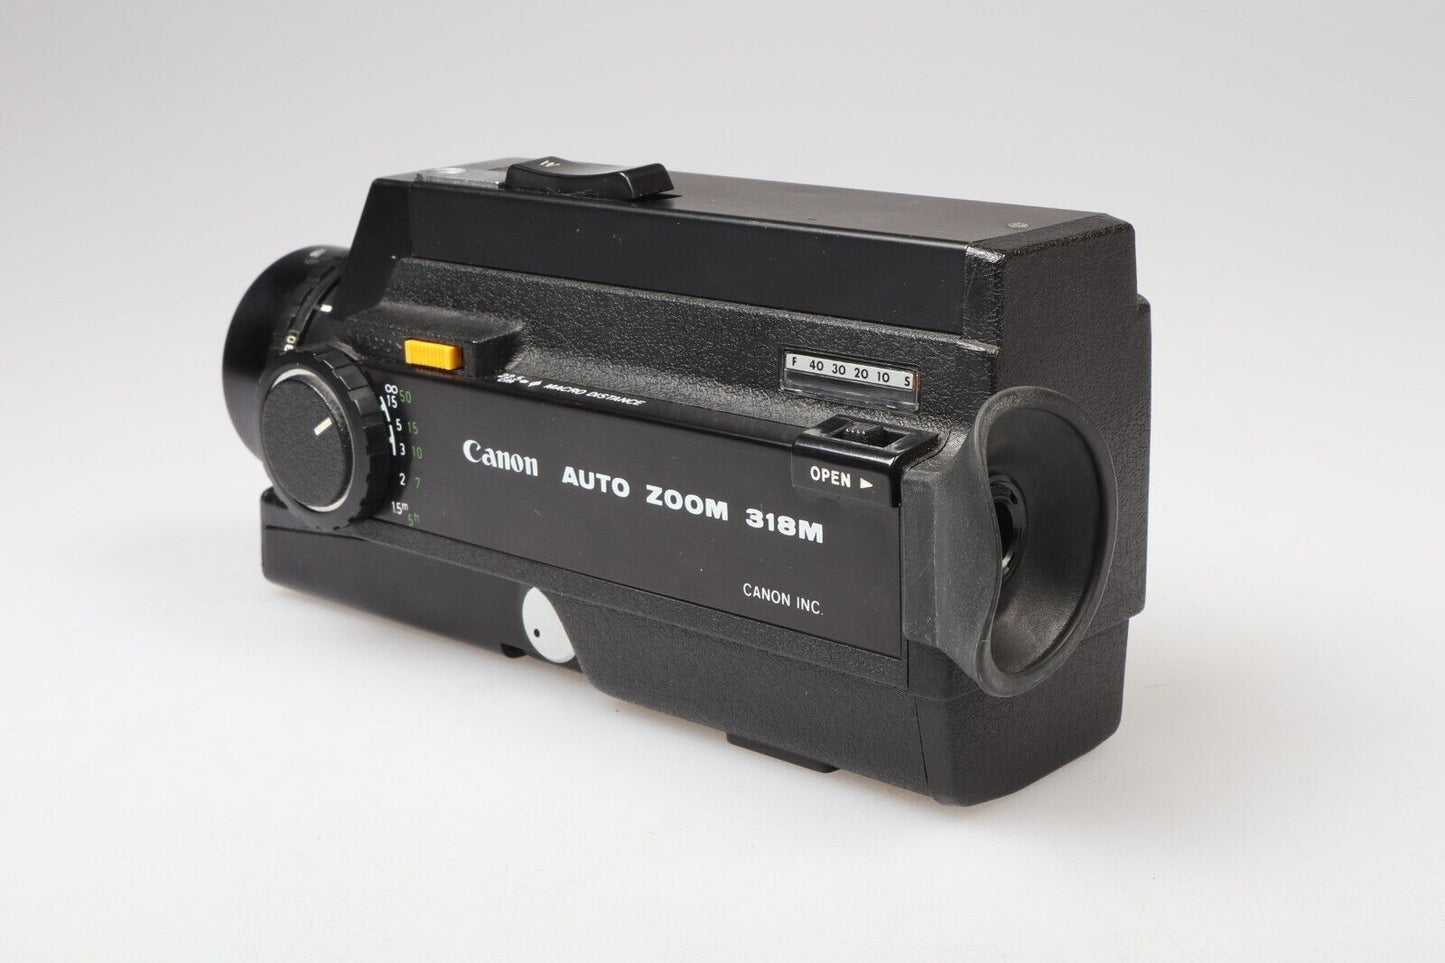 Canon Auto Zoom 318m | Super 8 Cine Film Camera | Black